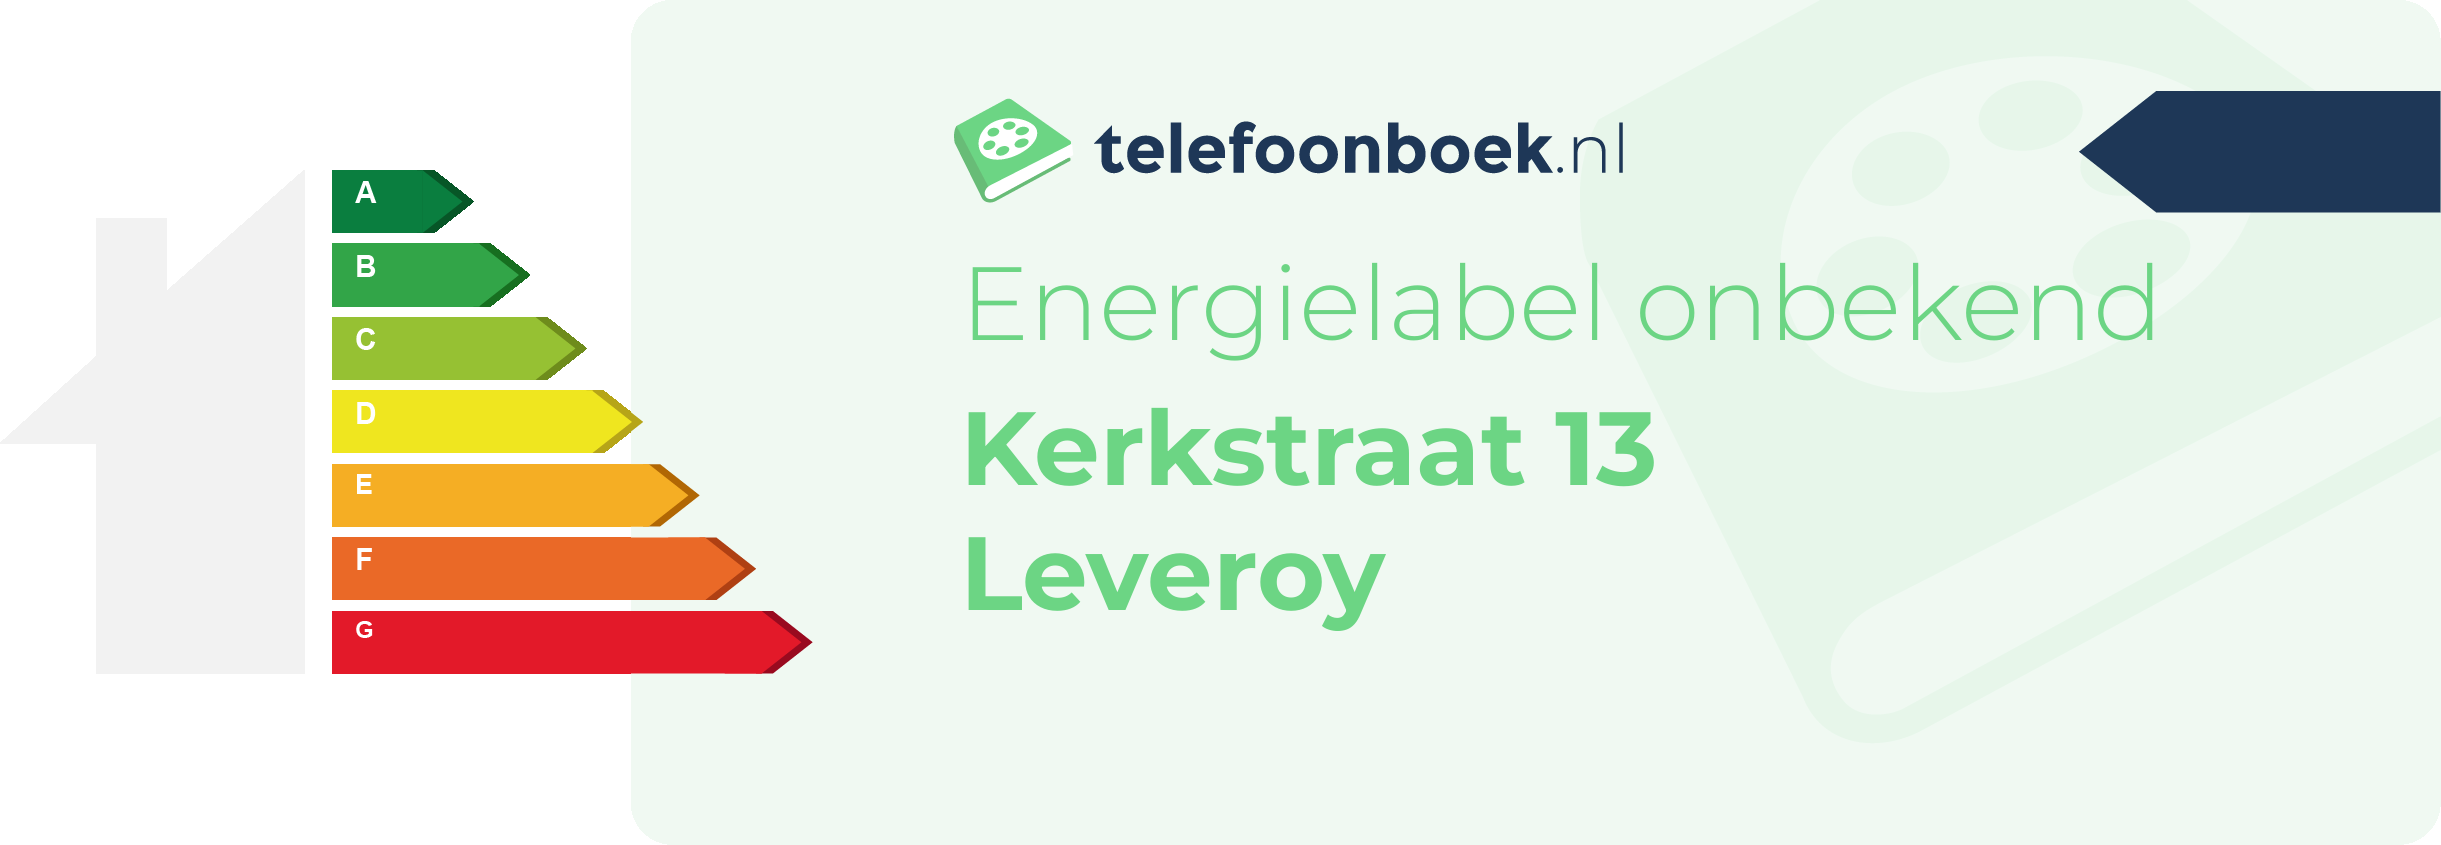 Energielabel Kerkstraat 13 Leveroy